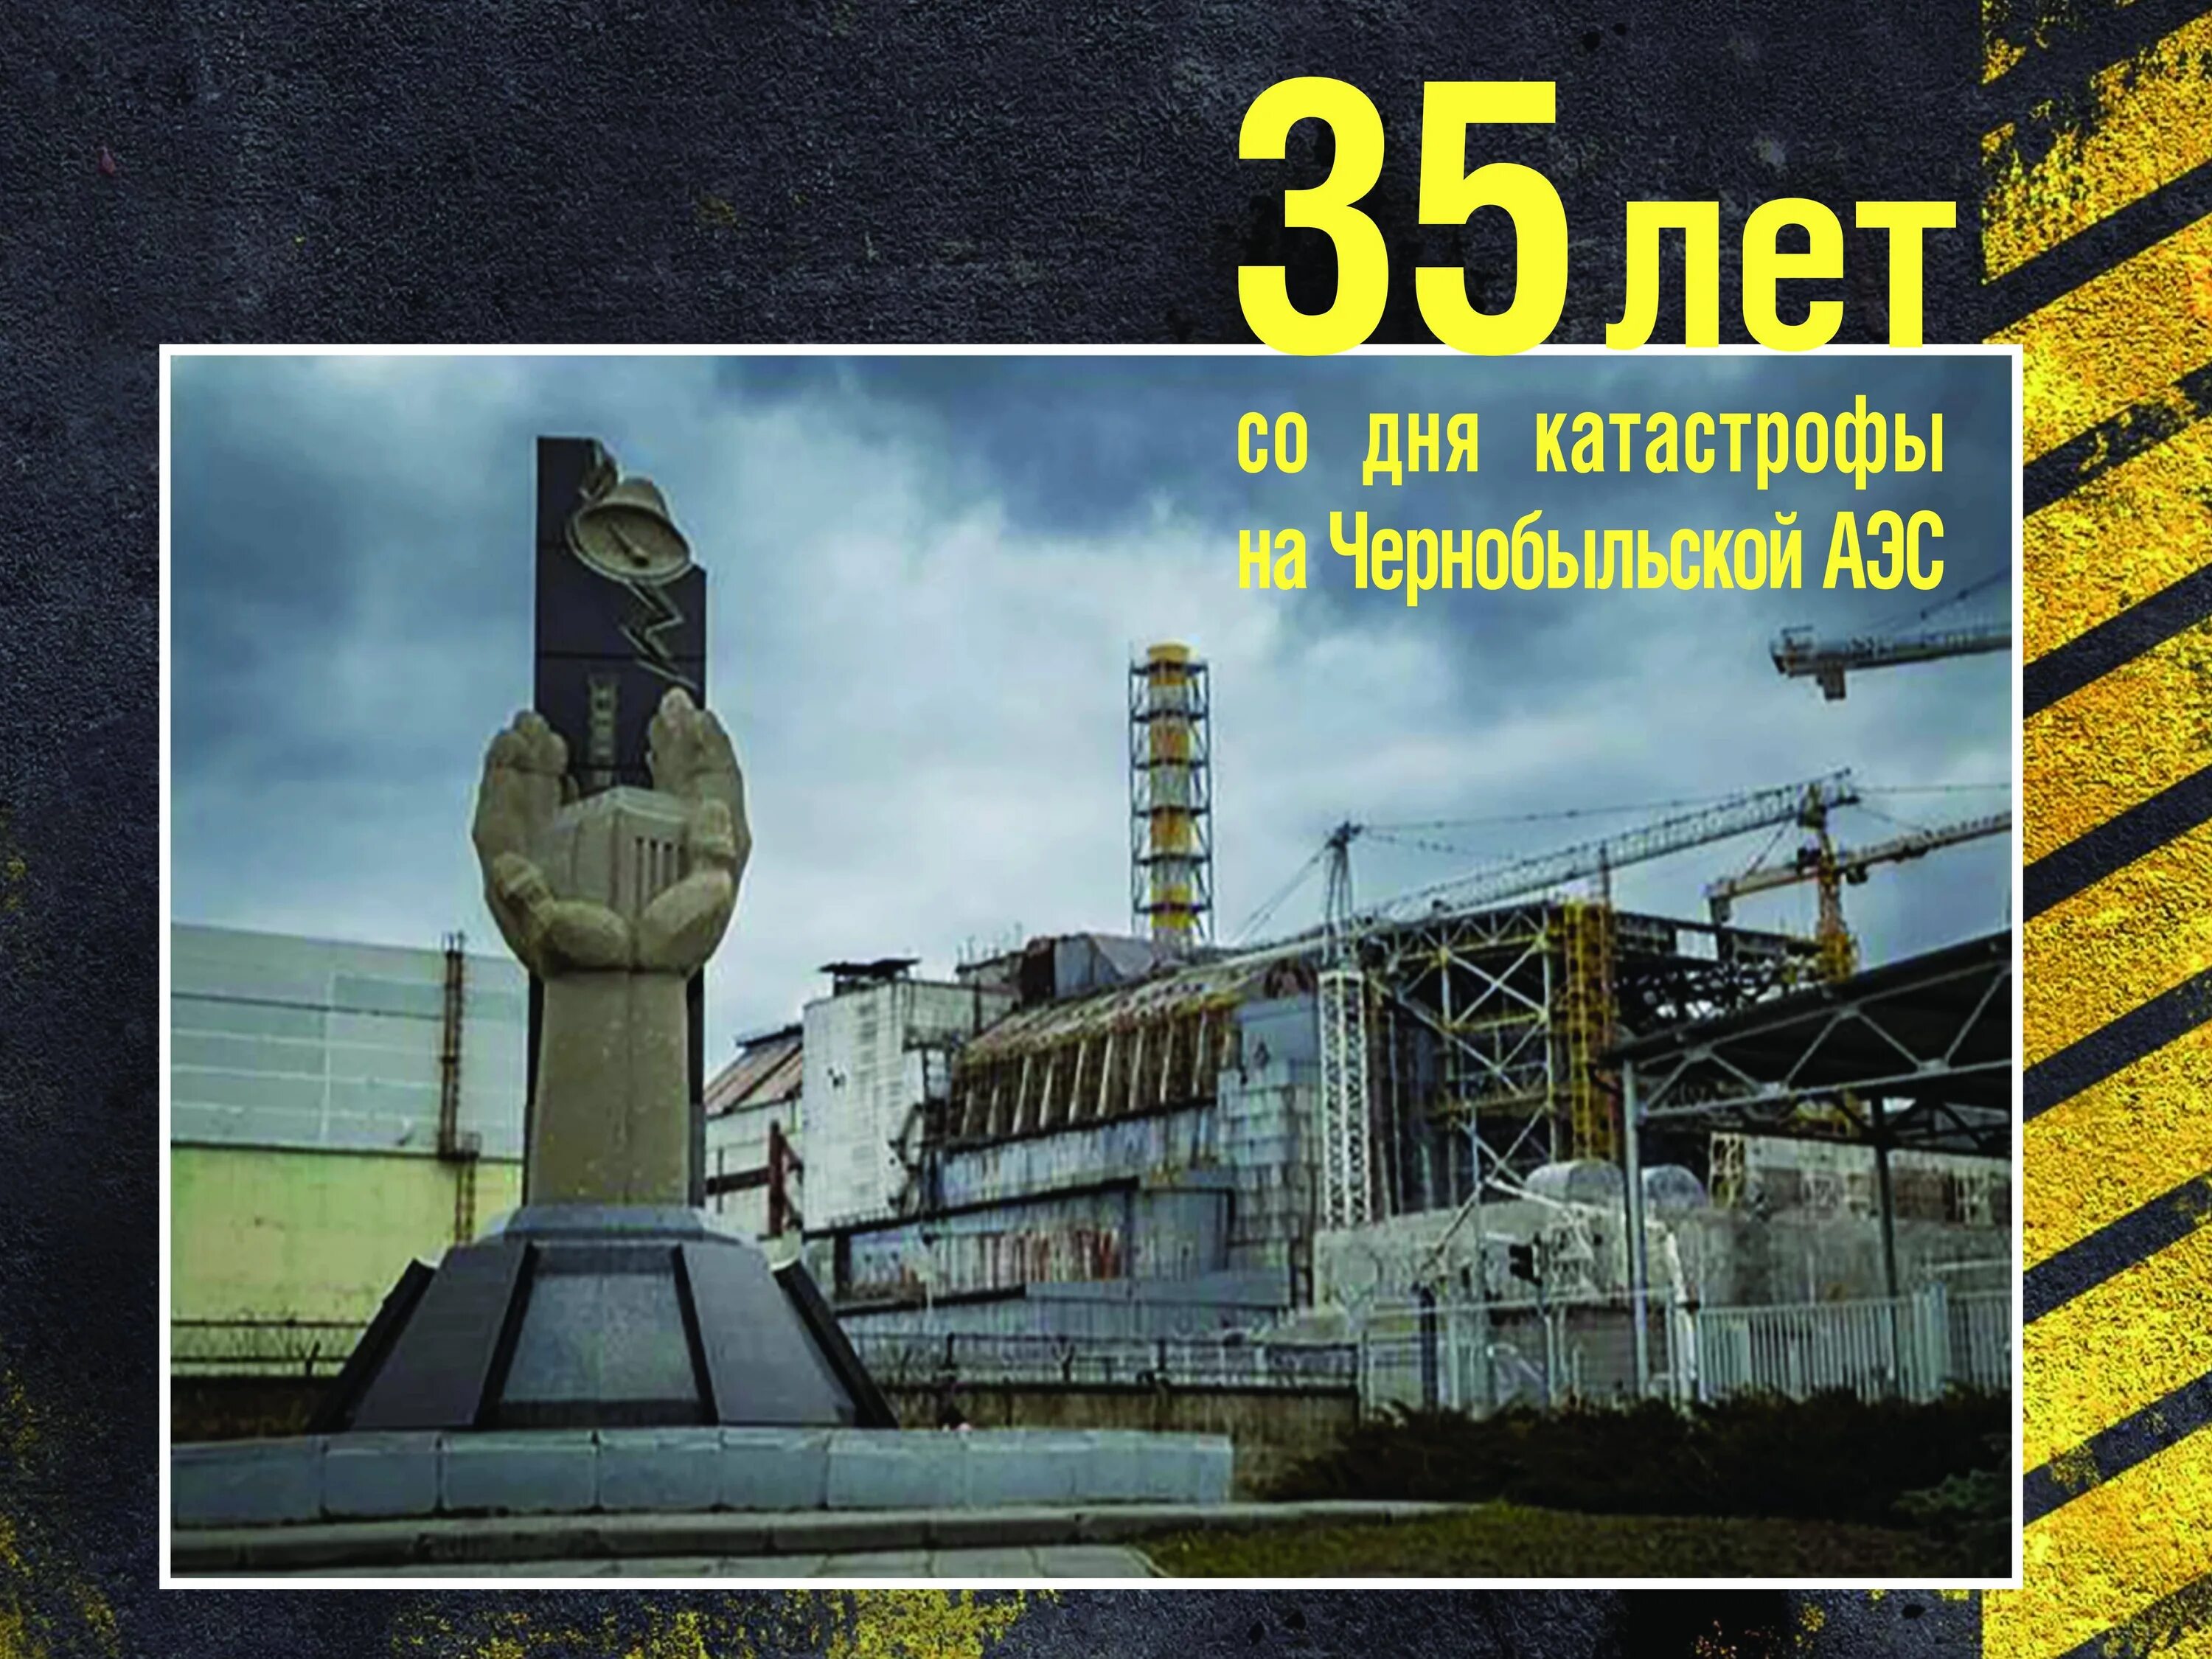 26 Апреля 1986 день памяти Чернобыльской АЭС. Чернобыль взрыв атомной станции 1986. ЧАЭС 26.04.1986. 35 Лет со дня аварии на Чернобыльской АЭС. В каком году случилась чернобыльская аэс